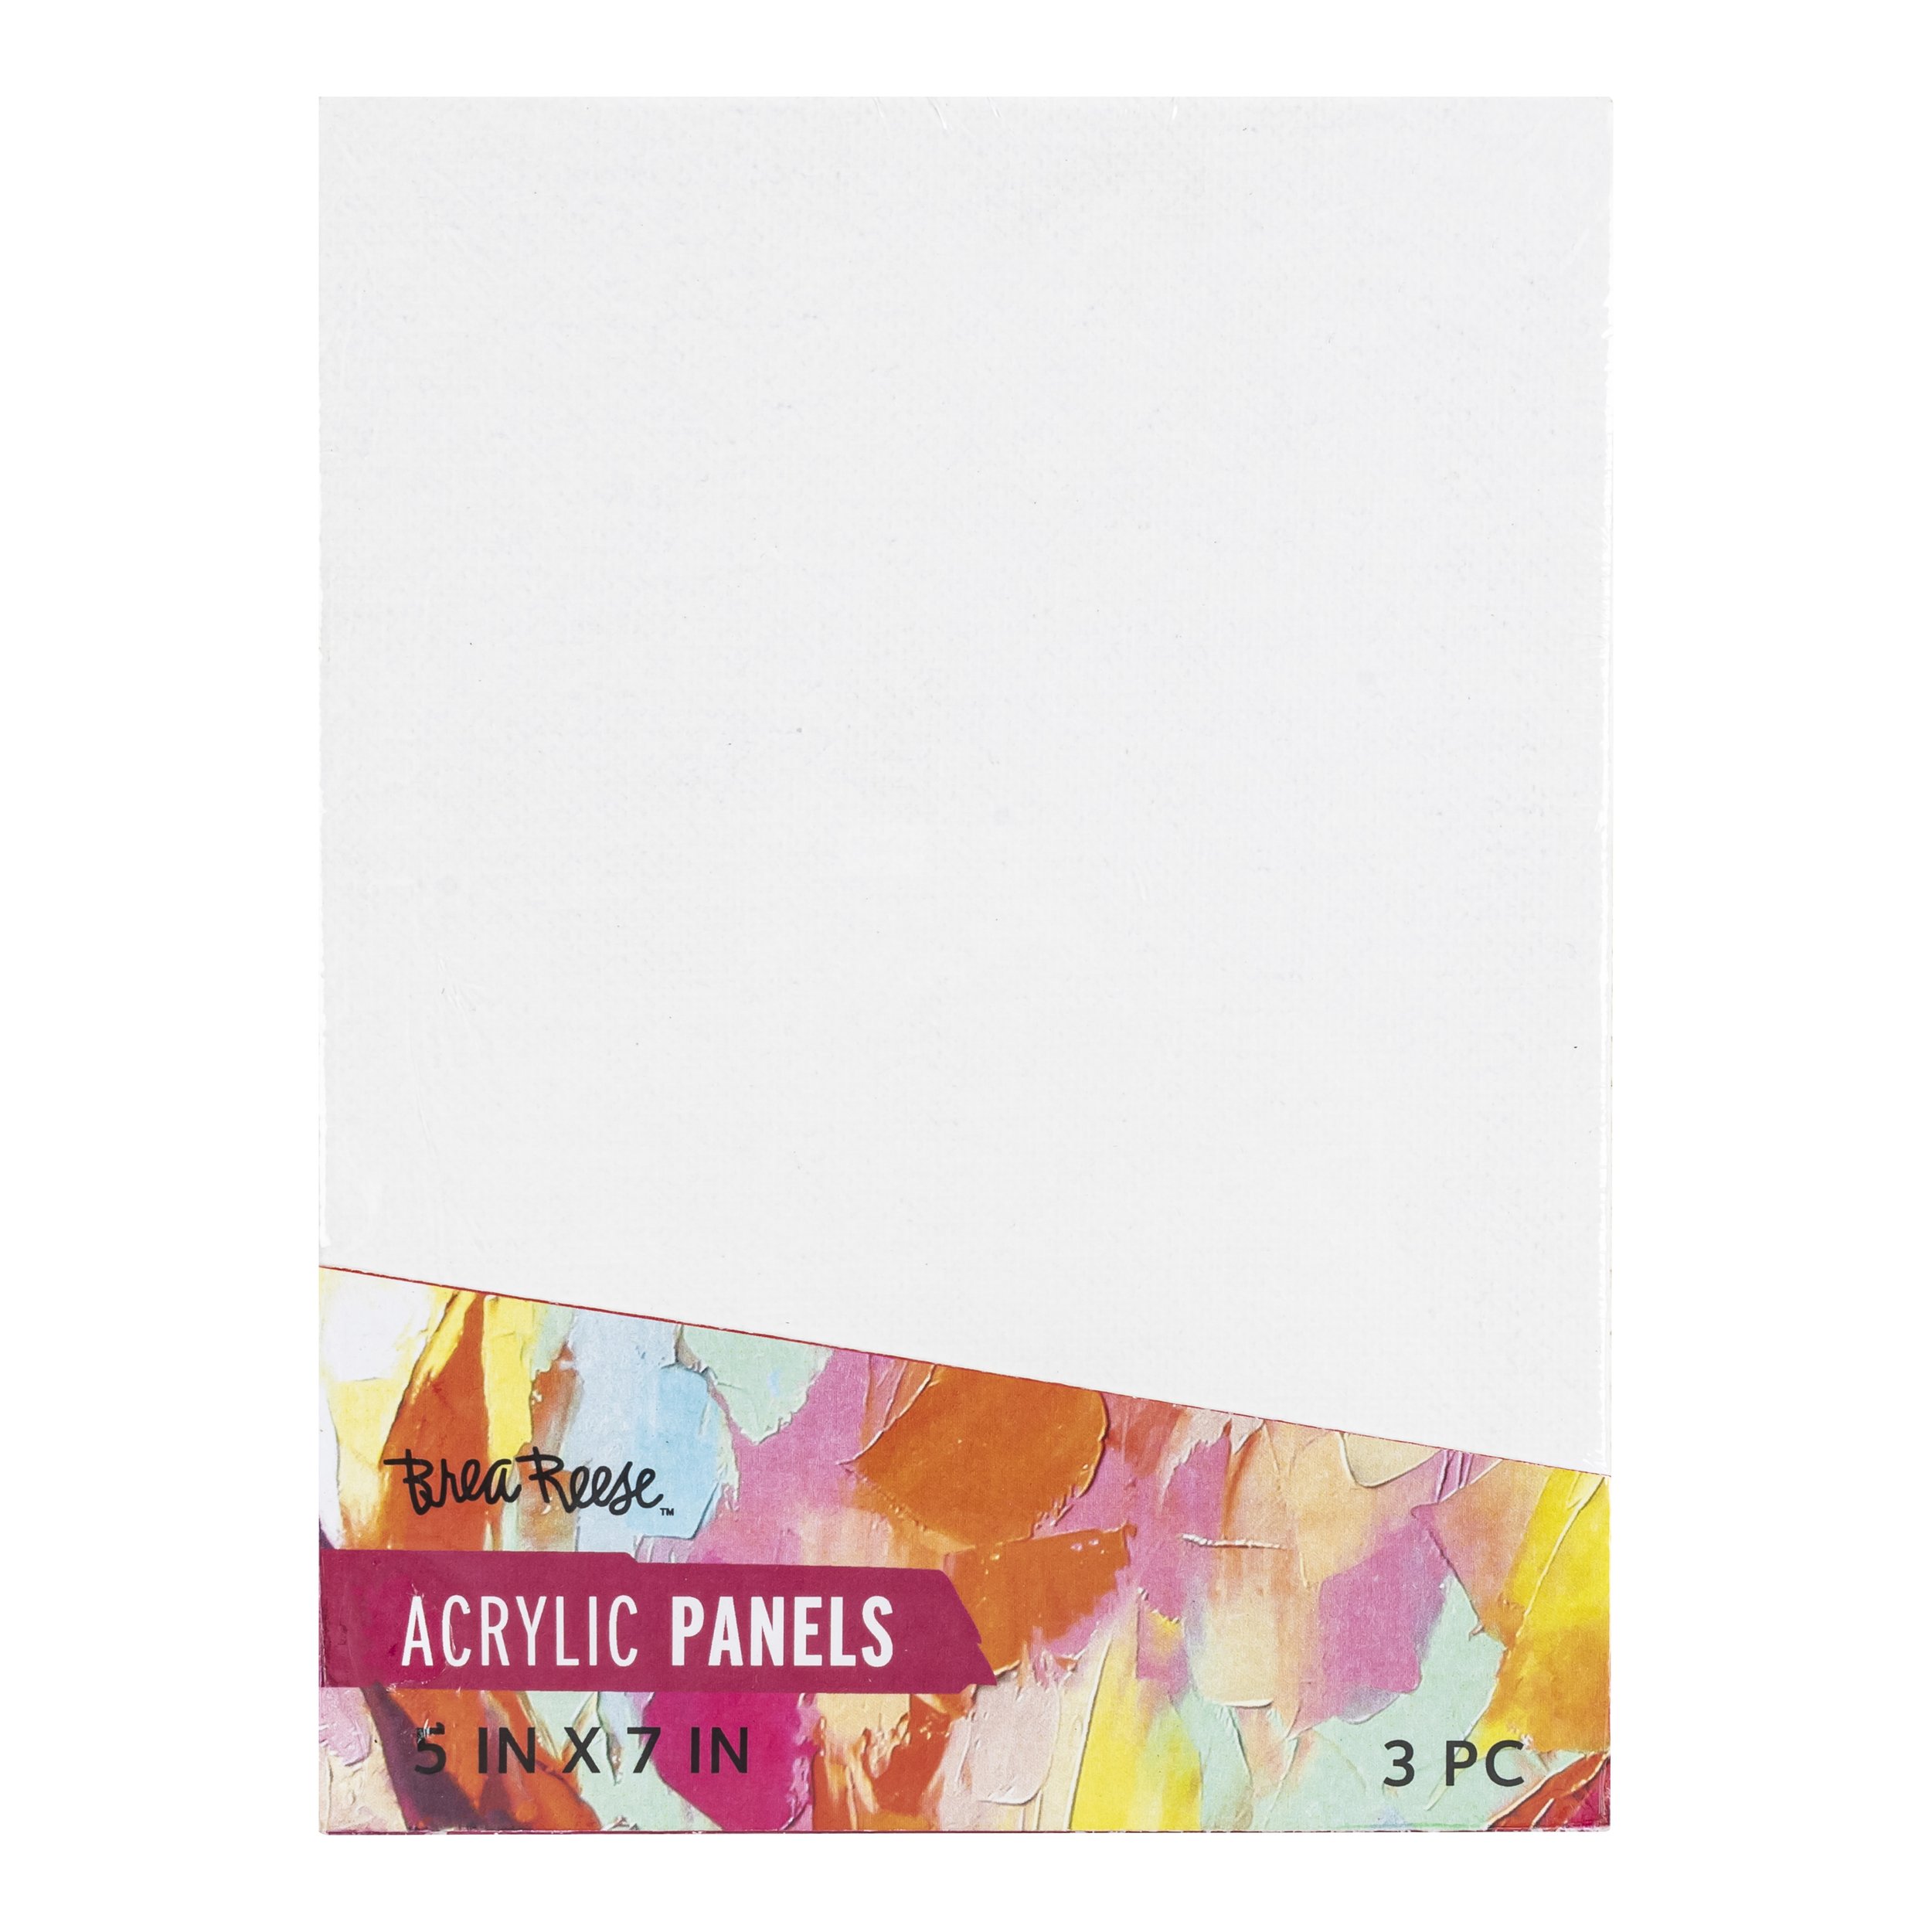 Brea Reese™ Josie Lewis™ Watercolor Paper Pad, 9 x 12